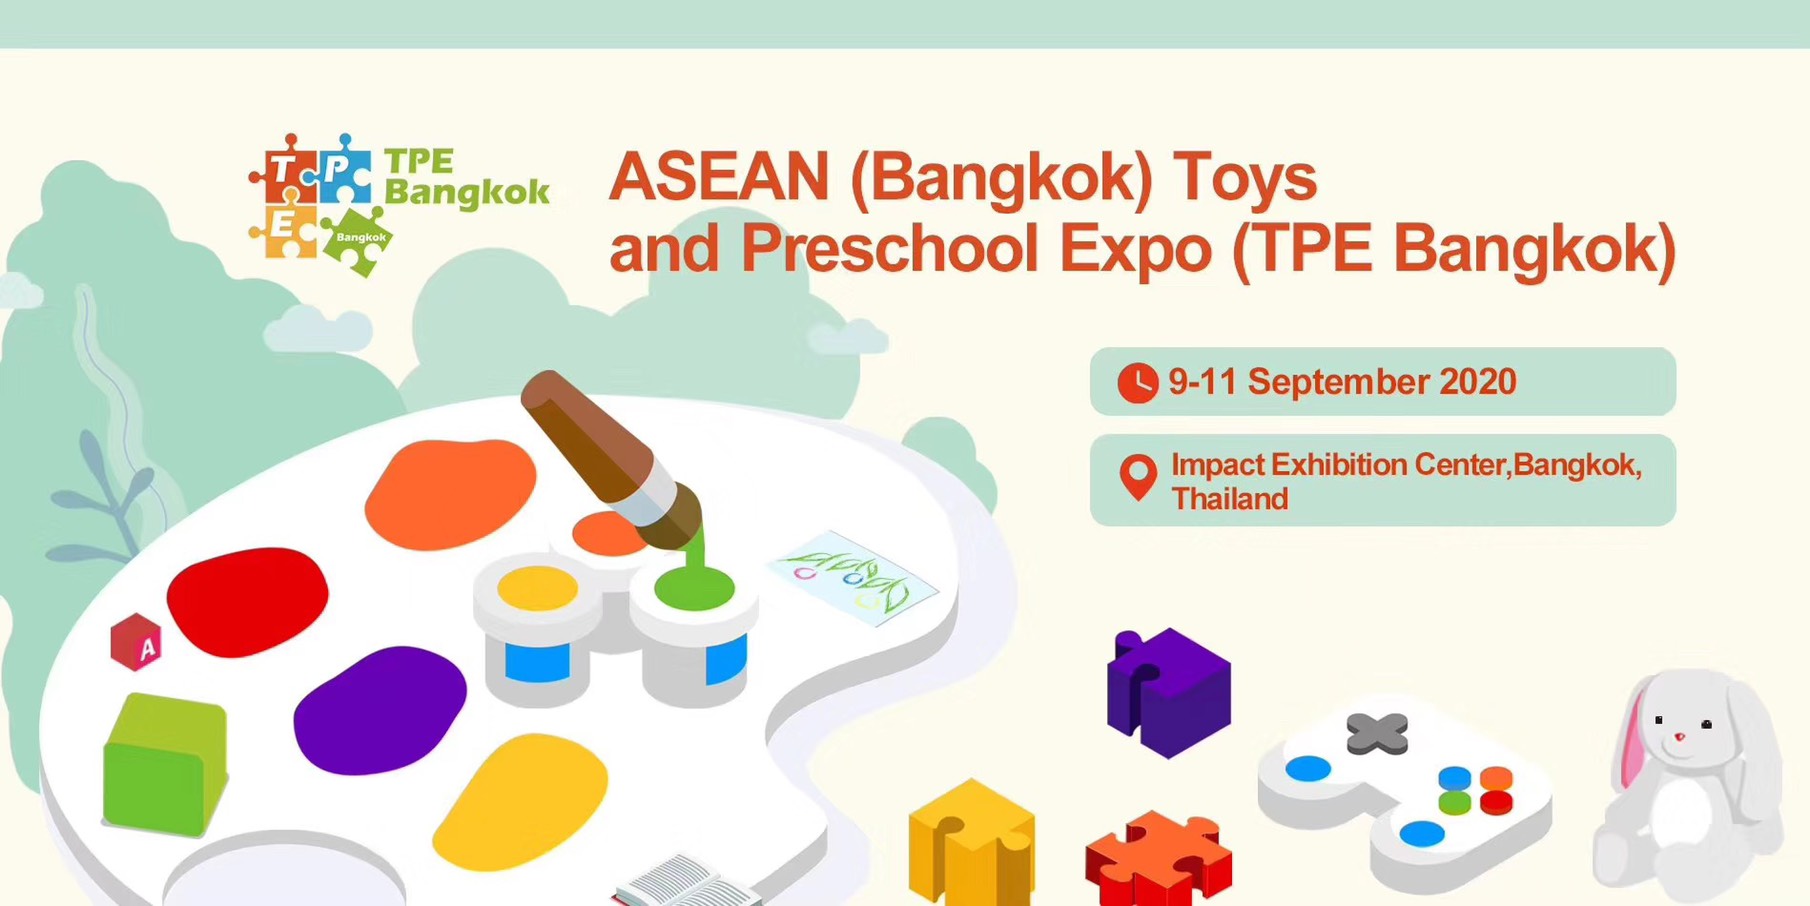 มหกรรมแสดงของเล่นเด็กและสินค้าก่อนวัยเรียนแห่งอาเซียน (กรุงเทพฯ) ASEAN (Bangkok) Toys & Preschool 2020